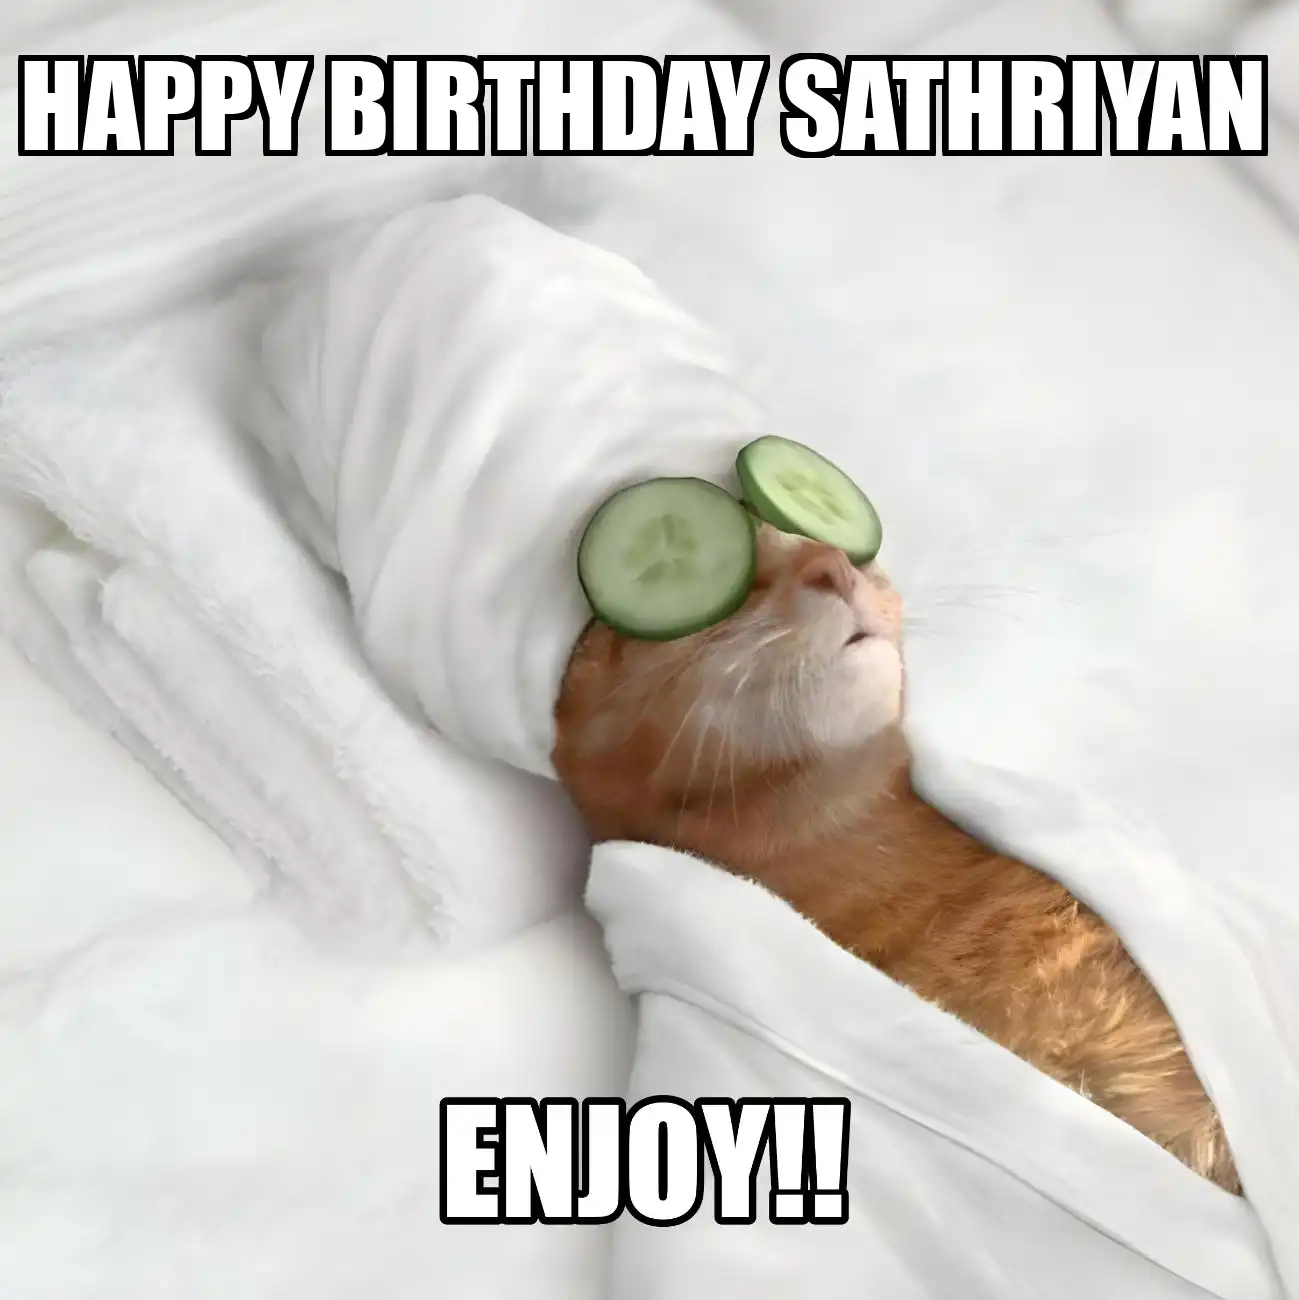 Happy Birthday Sathriyan Enjoy Cat Meme